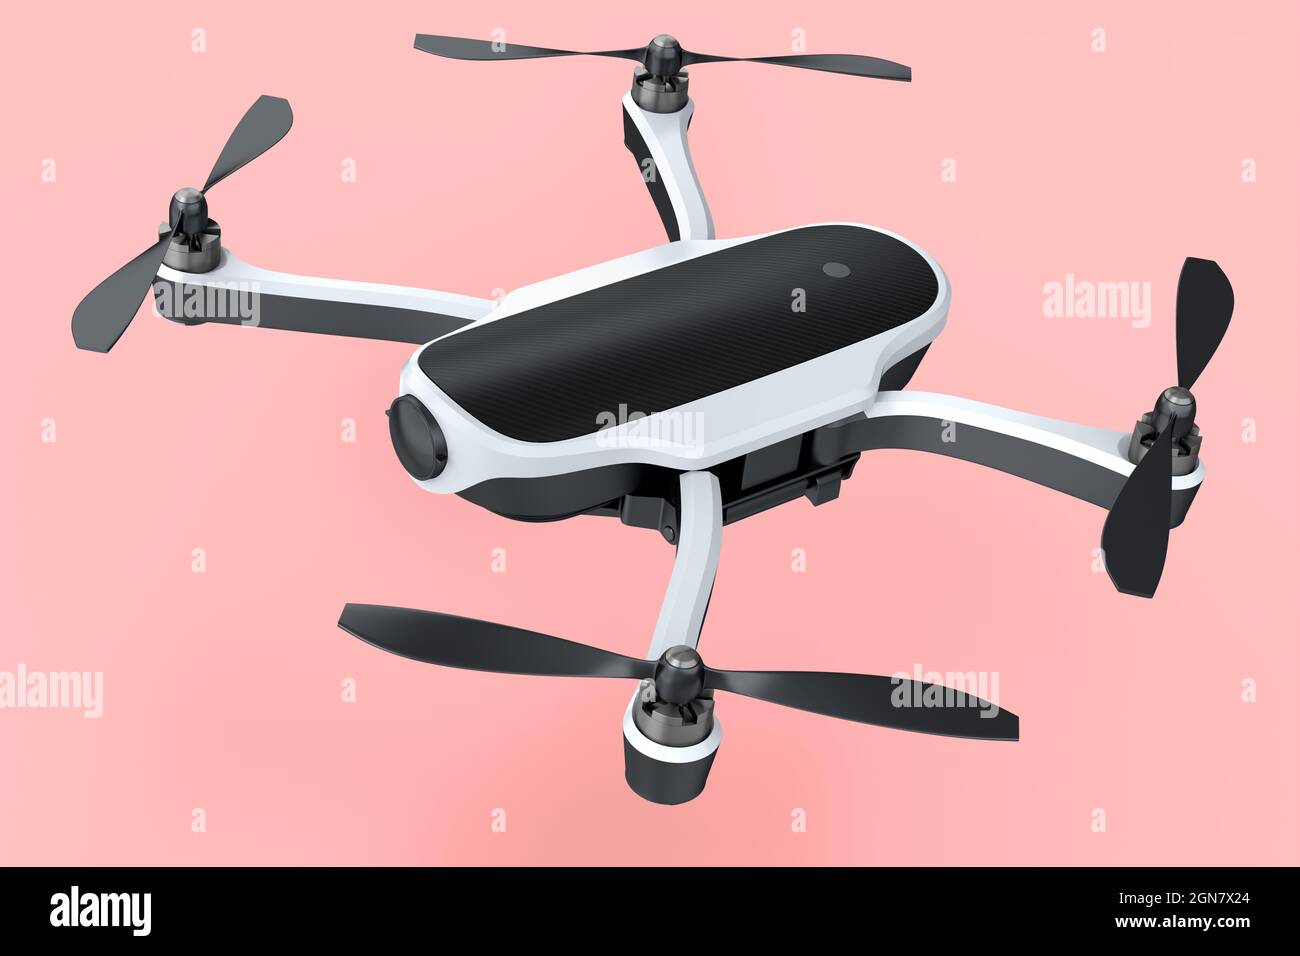 Foto volanti e video drone bianco o quadricottero con Action camera isolato  su sfondo rosa. Rendering 3D del dispositivo per la consegna o fotogr aereo  Foto stock - Alamy